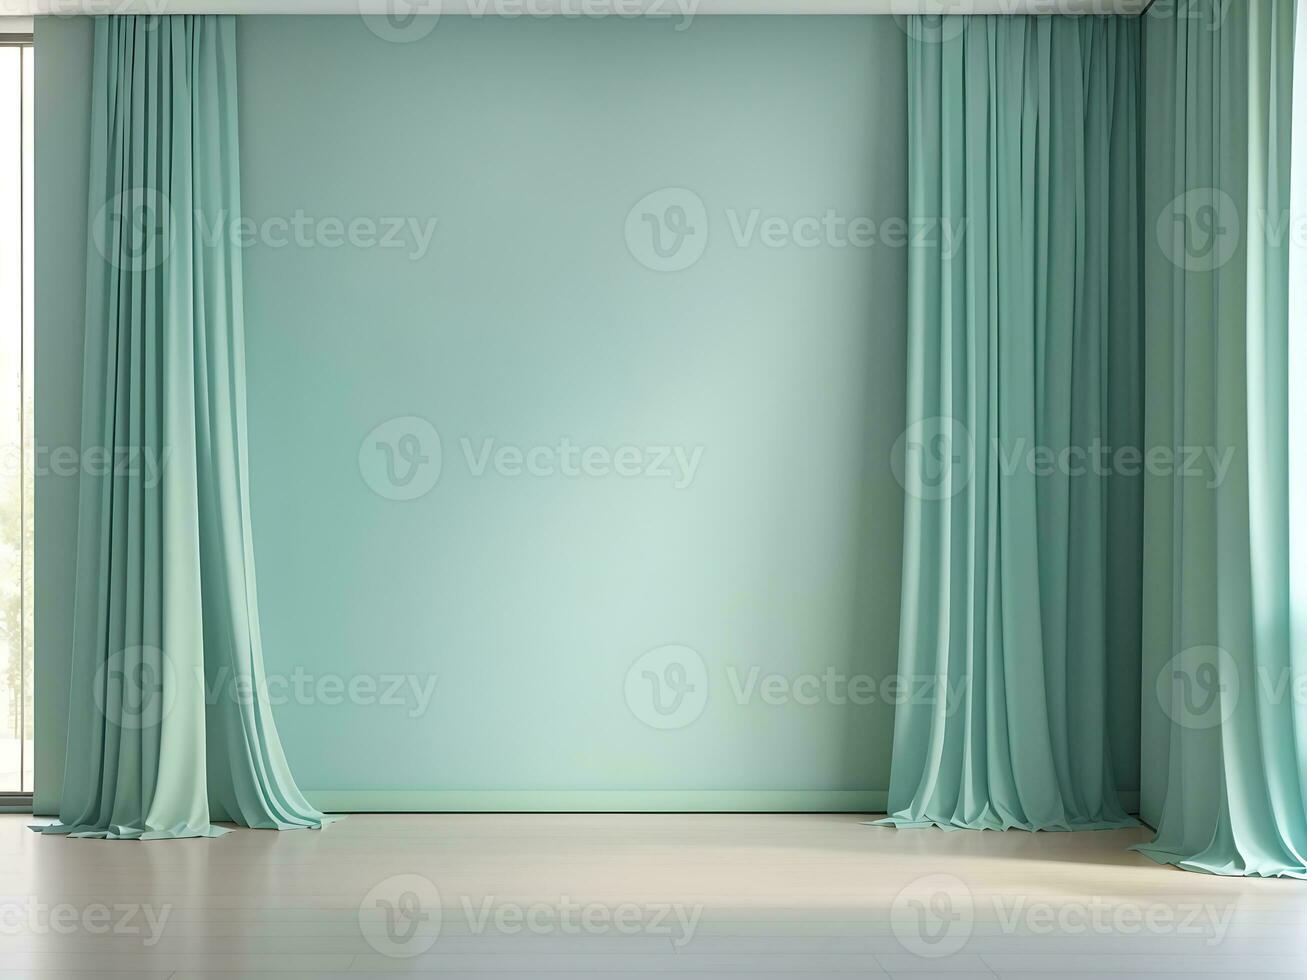 Pastell- Türkis Blau Grün leeren Mauer im Zimmer mit Seide Vorhang Vorhänge. spotten oben Vorlage zum Produkt Präsentation. Leben, Galerie, Studio, Büro Konzept. 3d Wiedergabe, generieren ai foto